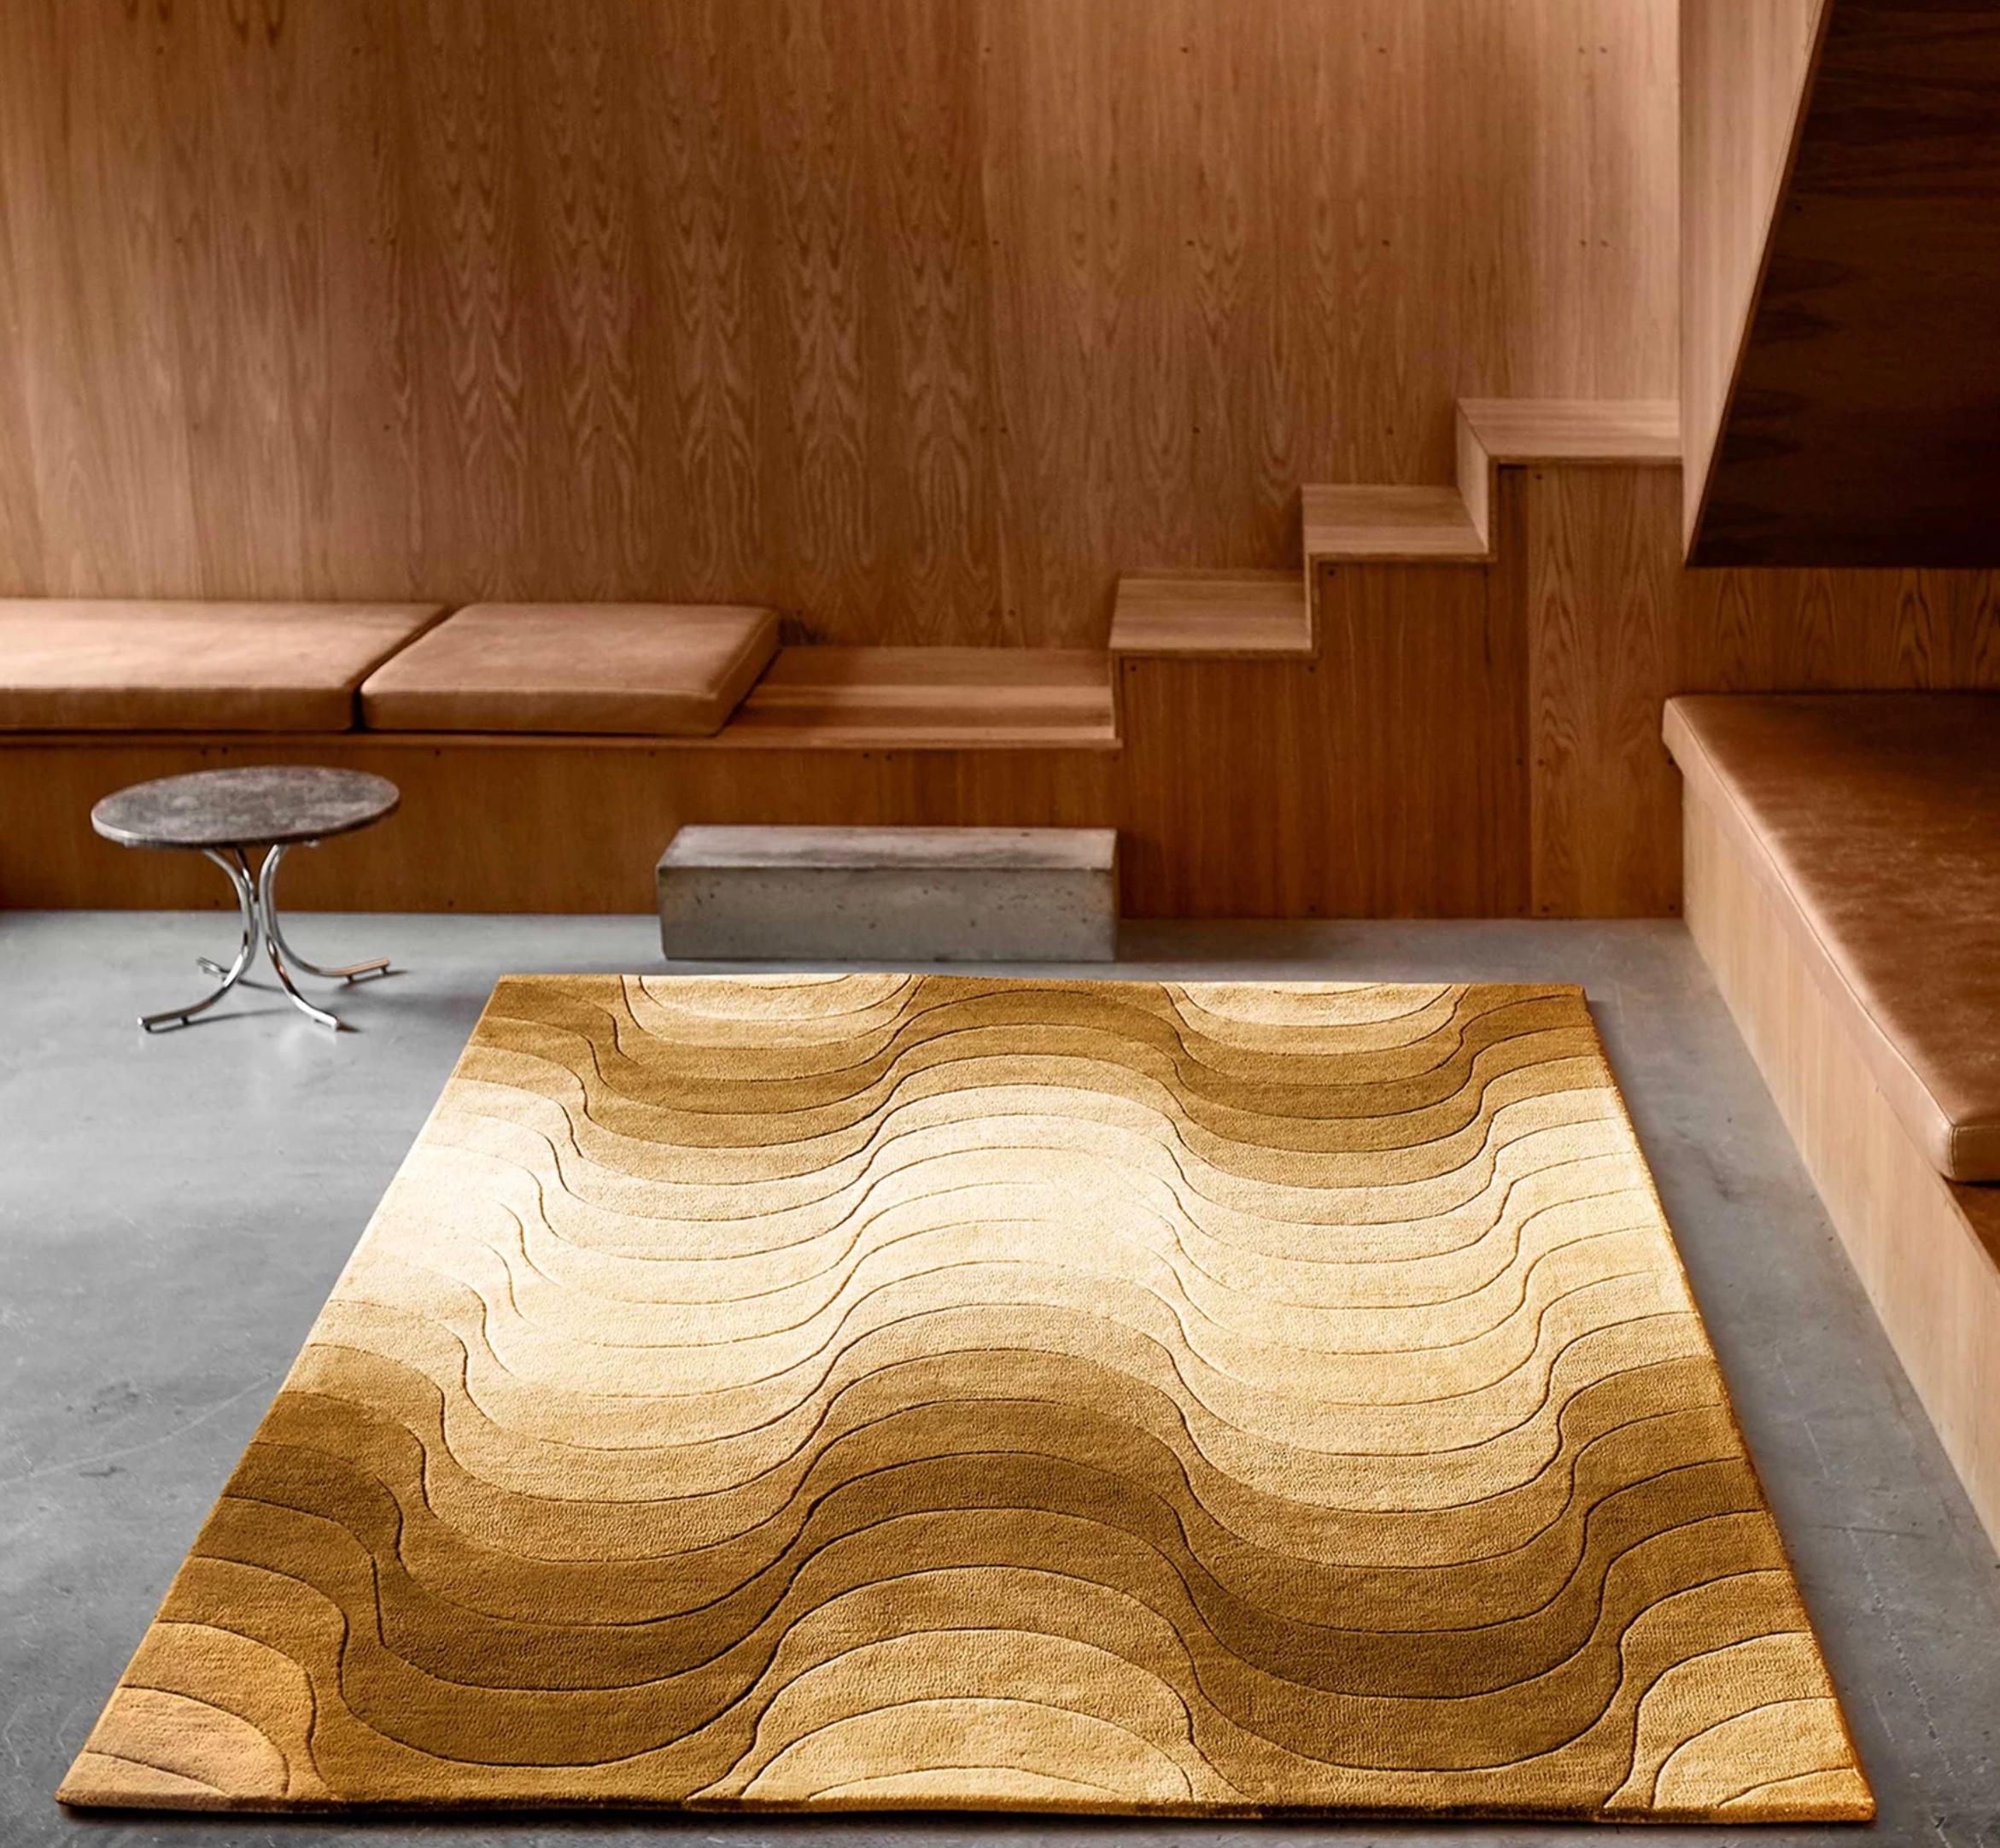 Tapis 'Wave' de Verner Panton 240 x 170 cm pour Verpan. Production actuelle.

En plus d'ajouter un élément sculptural à une pièce, les tapis servent également à souligner et/ou à transformer les dimensions de l'espace. Tous les tapis Verpan sont